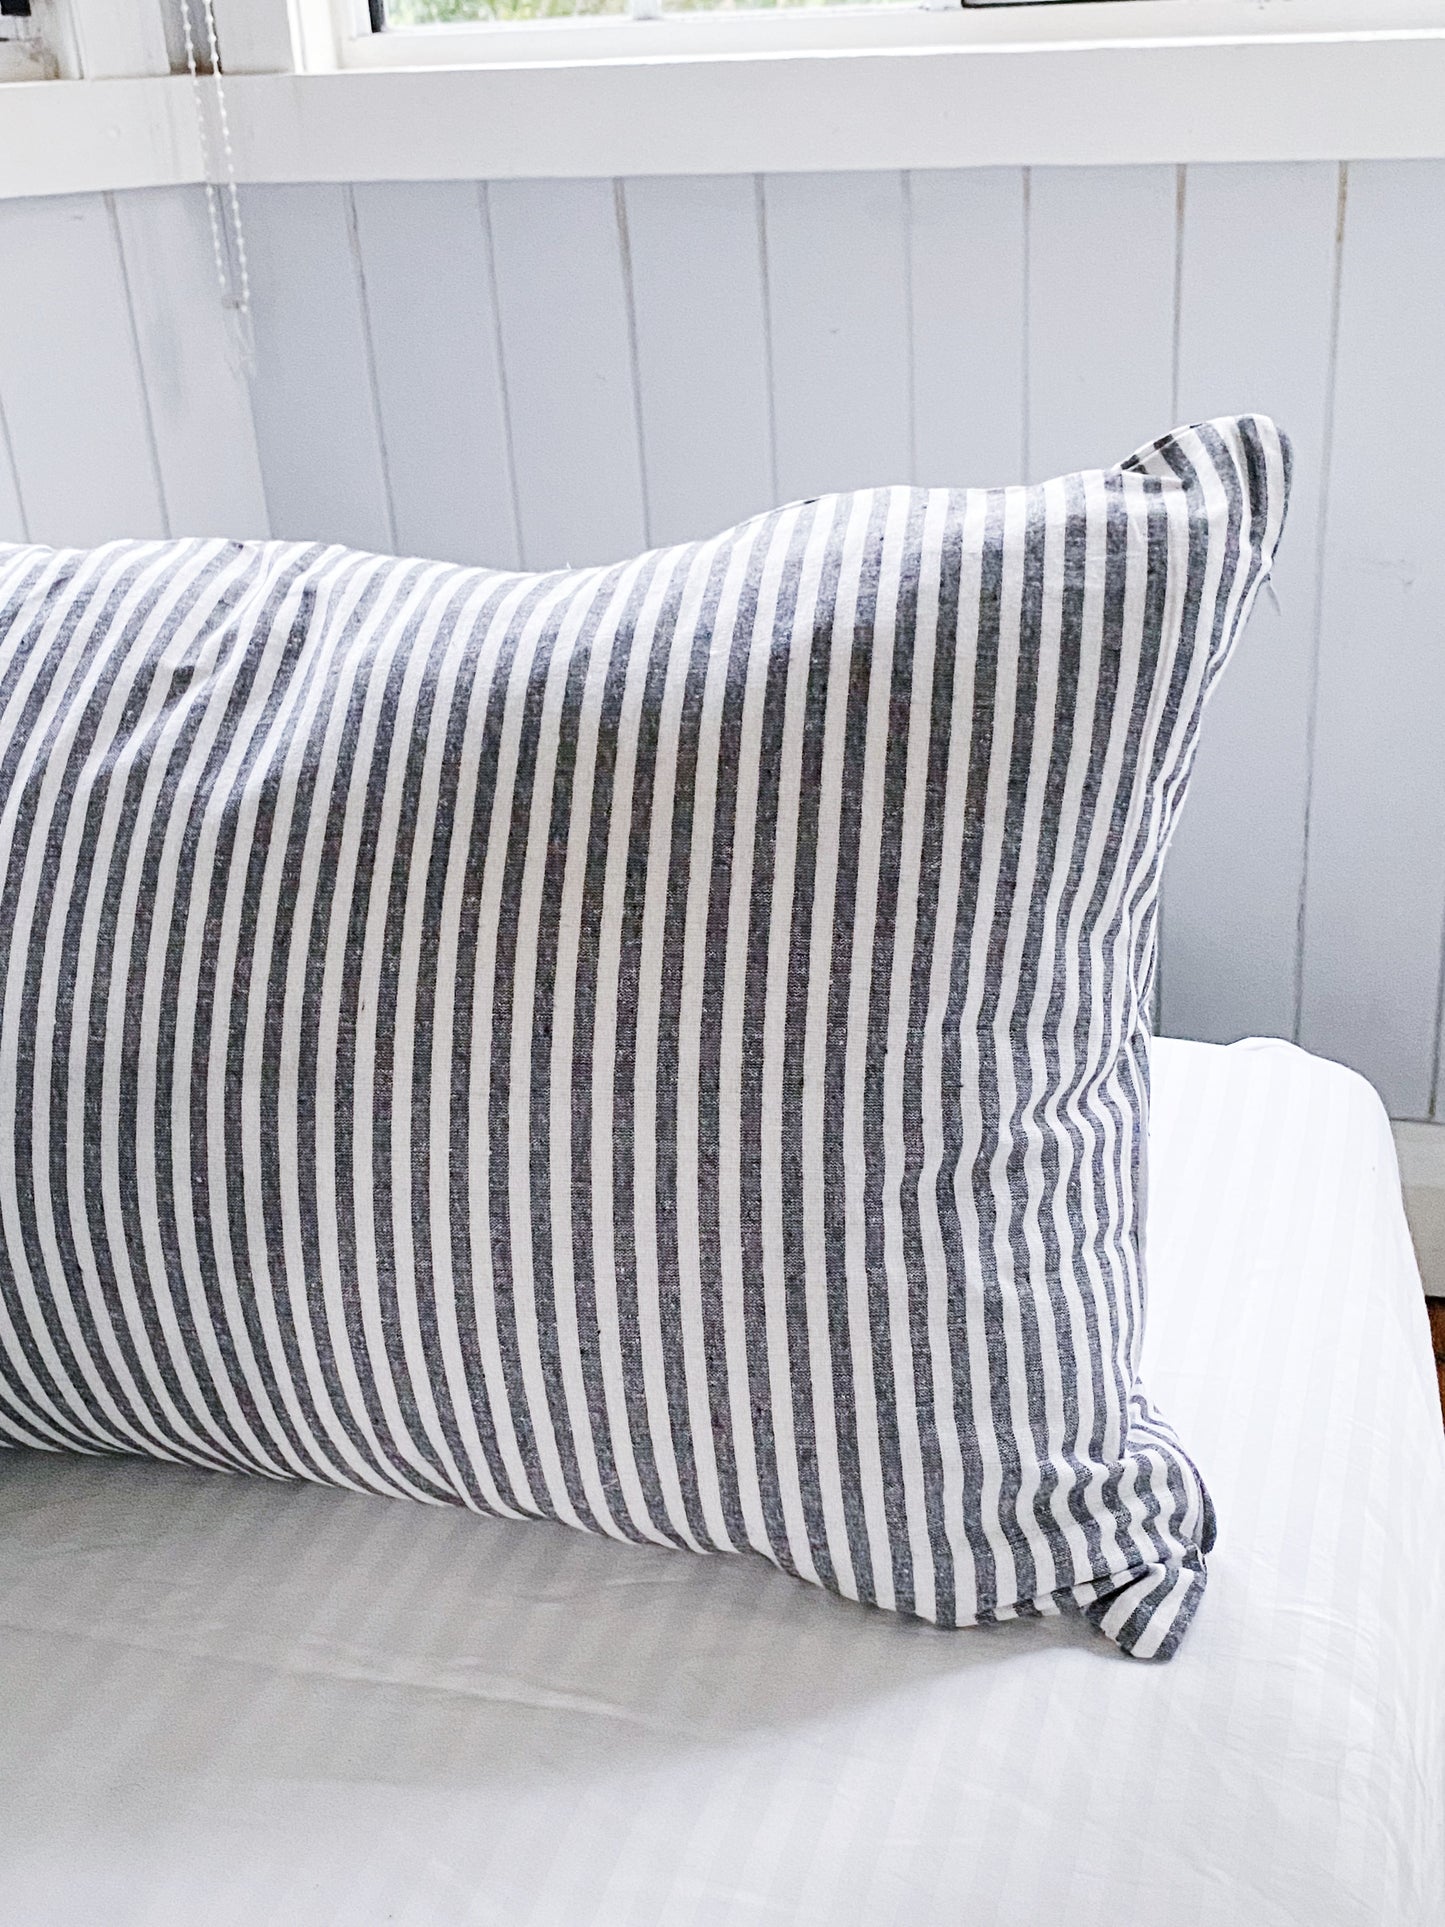 St Barth Stripes Pillowcase